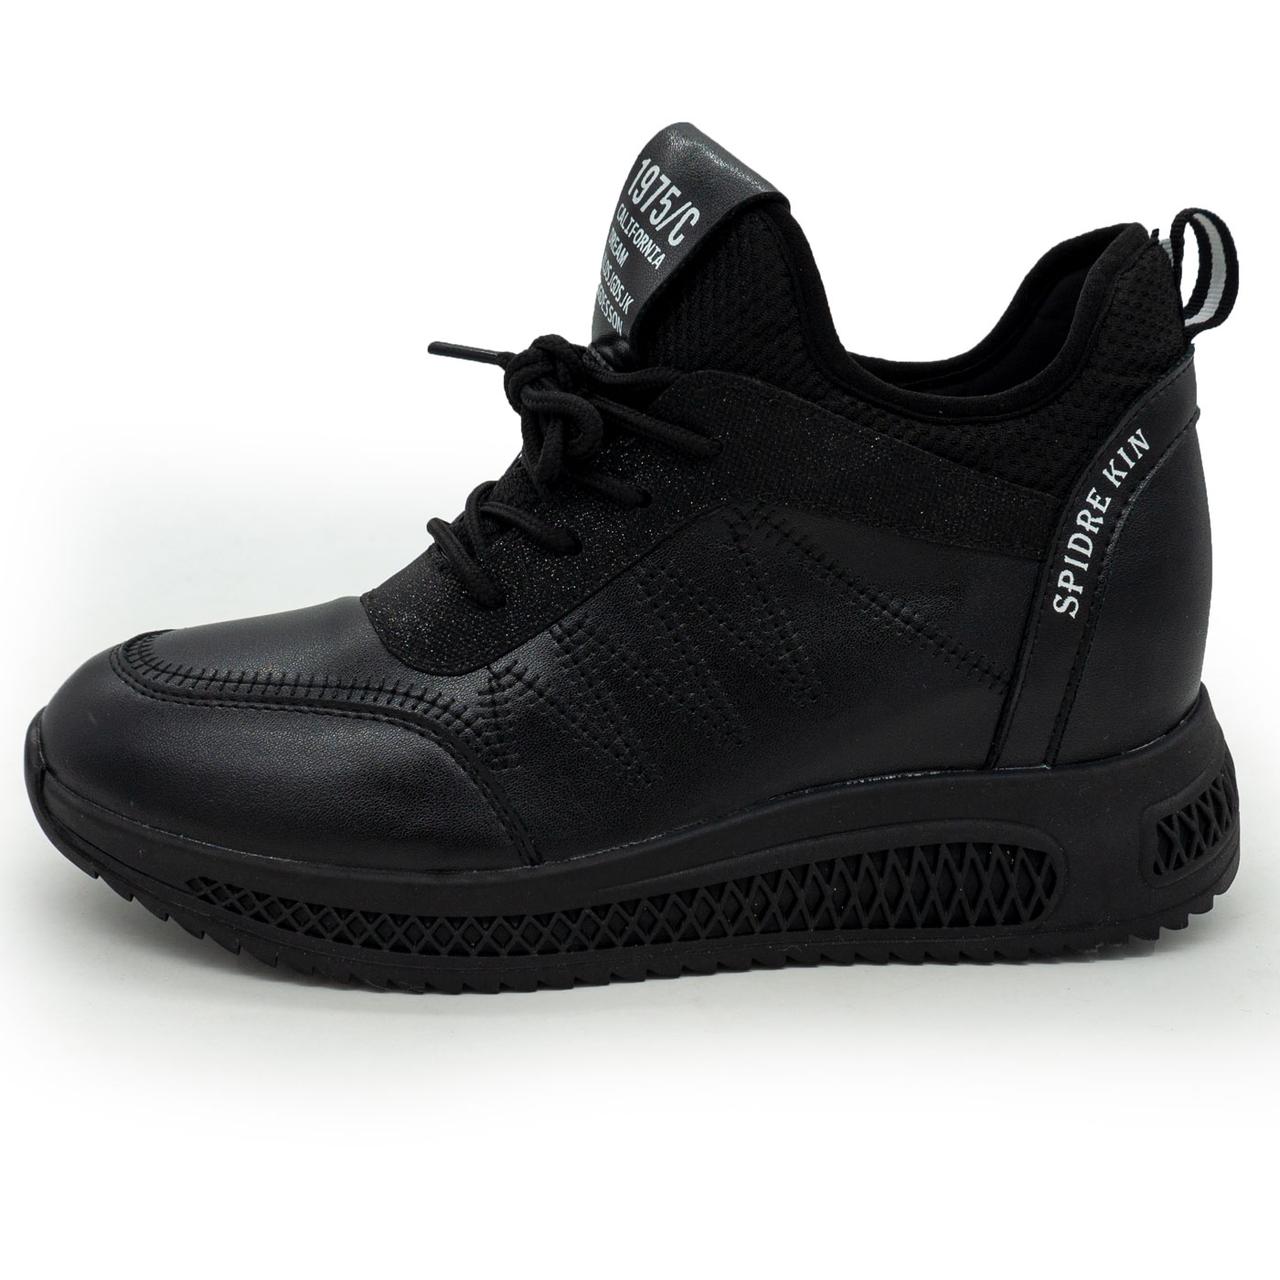 Жіночі кросівки Lonza 1668 чорні 36. Розміри в наявності: 36, 37, 38.